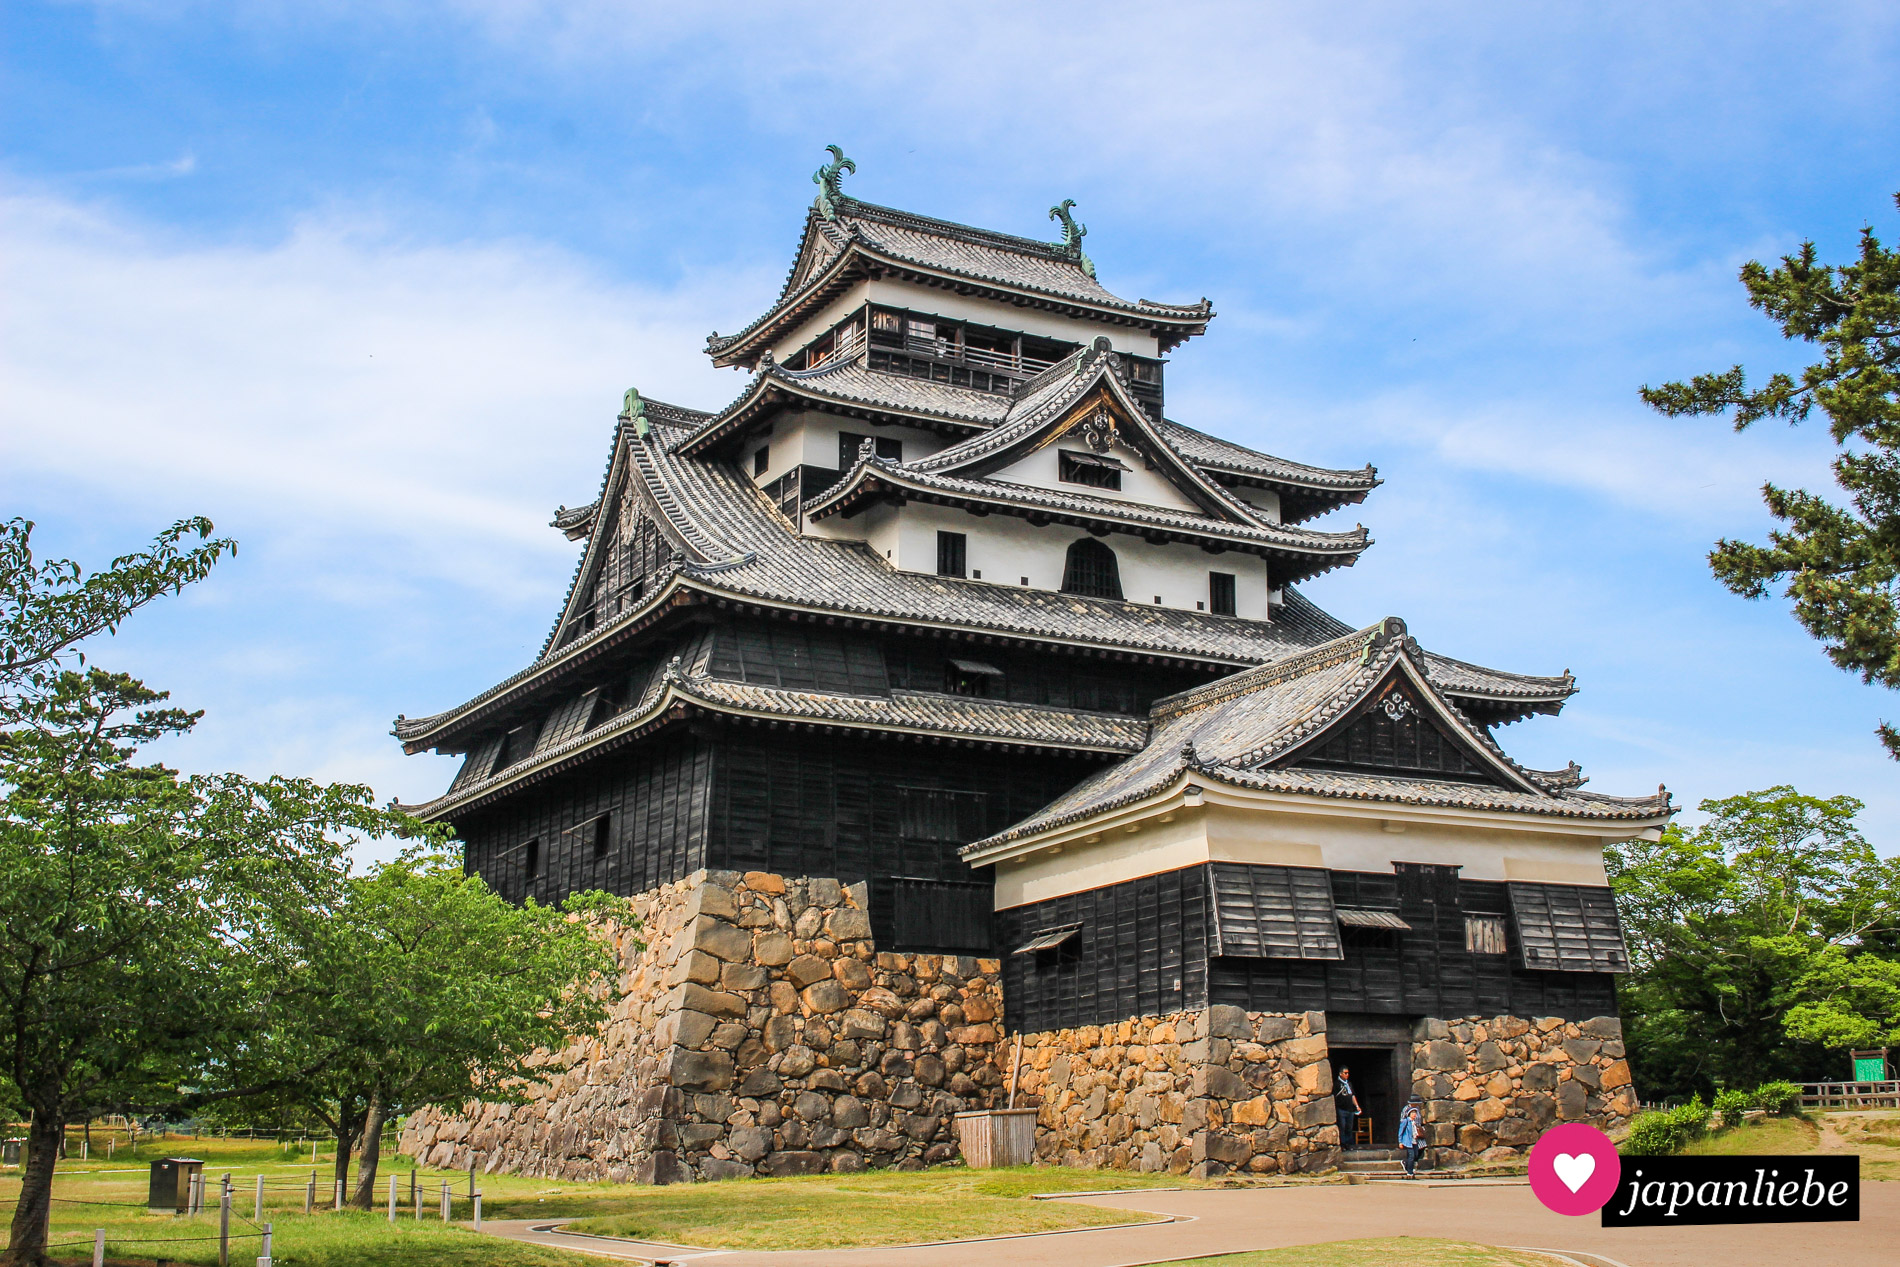 Der Burgfried der Burg Matsue ist im original aus dem 17. Jahrhundert erhalten. Durch die schwarze Verkleidung sprechen die Japaner manchmal nur von der „schwarzen Burg“.